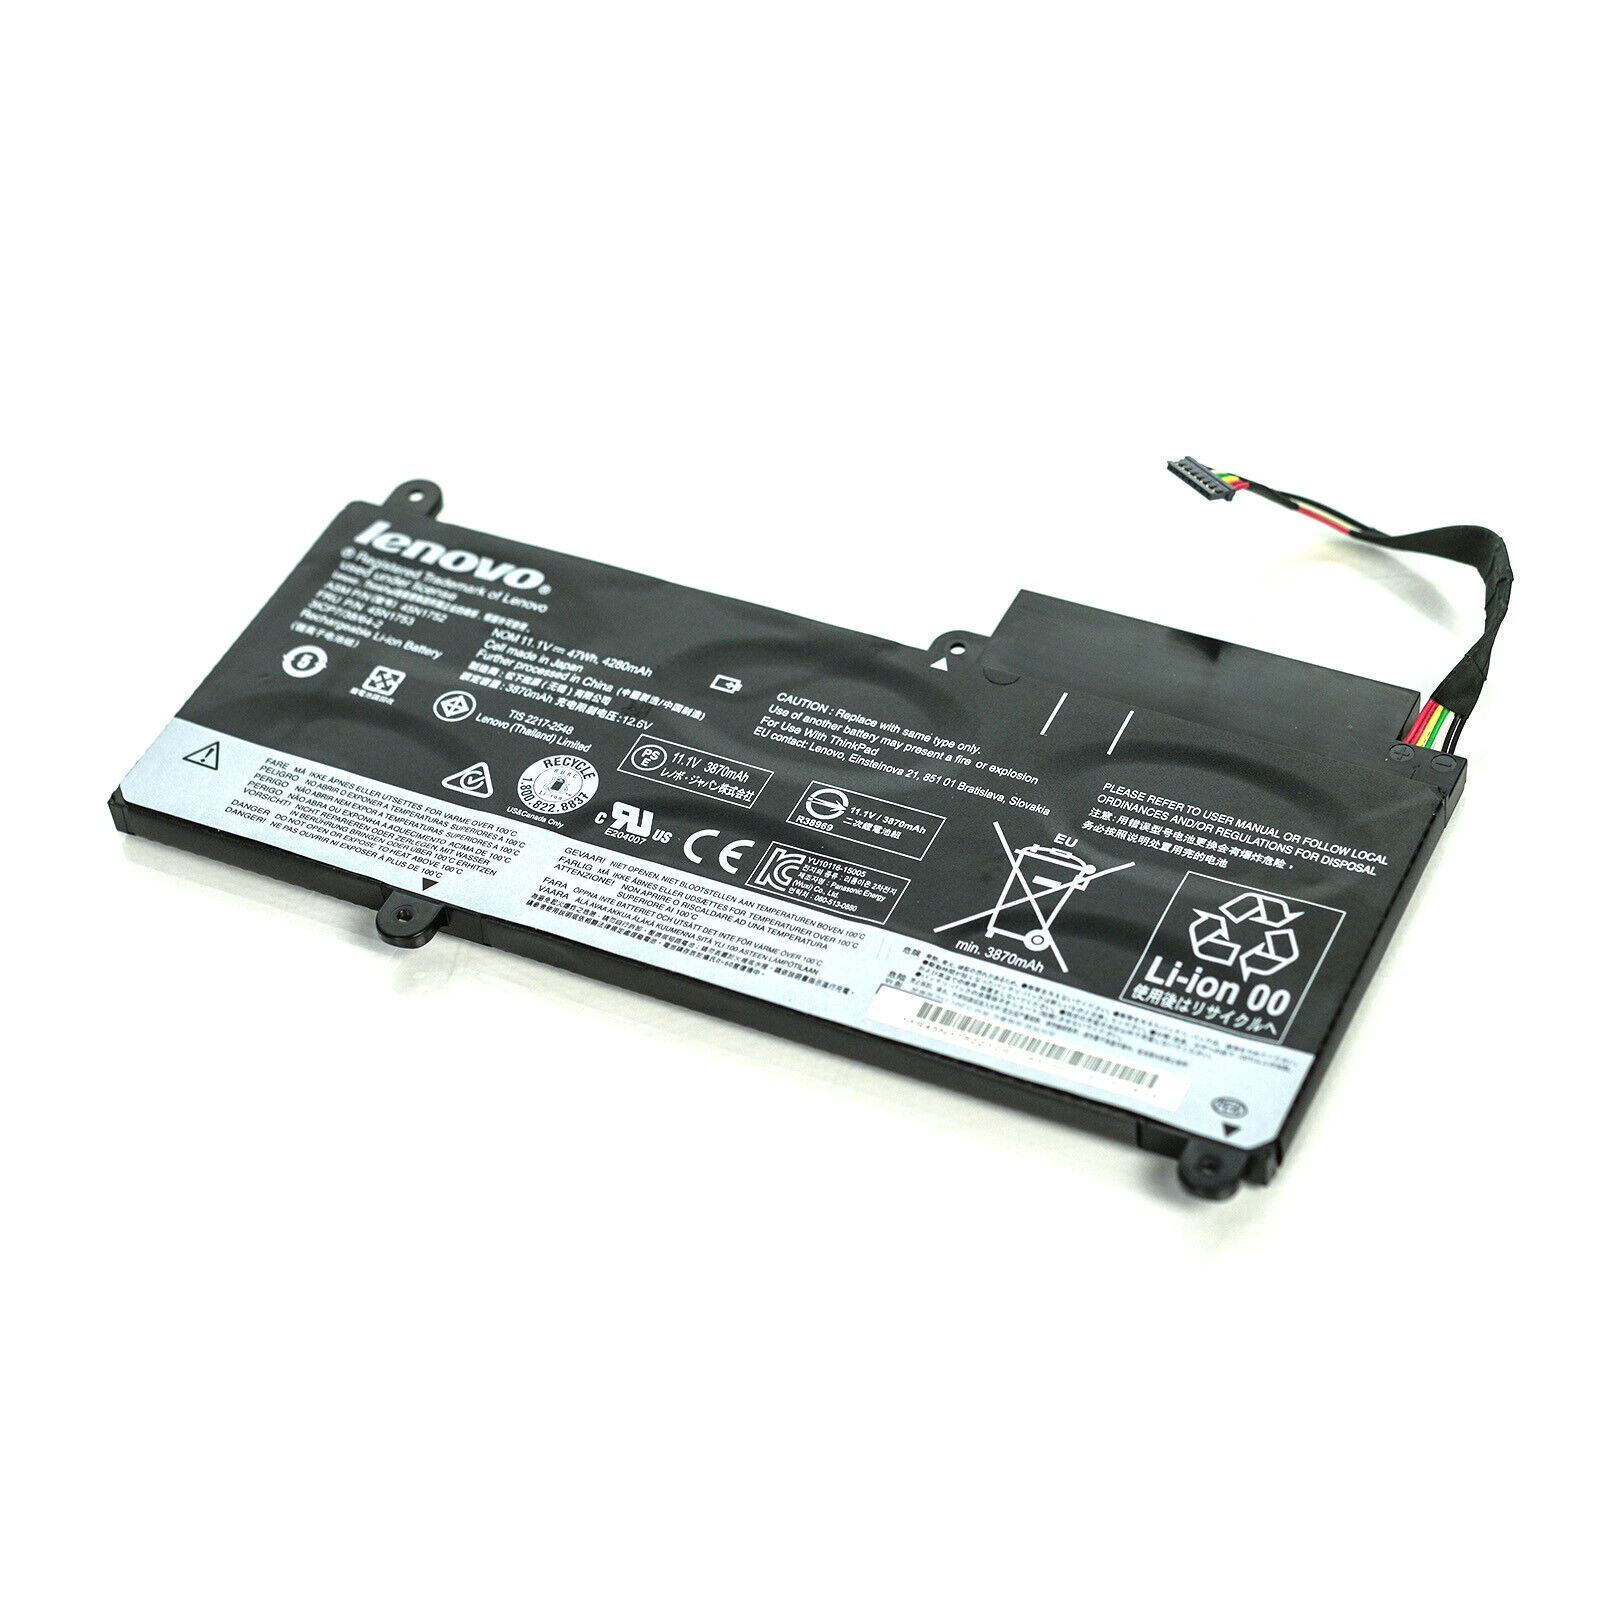 Lenovo ThinkPad Laptop Battery for E450 E450C E455 E460 E460C - 45N1752 45N1753